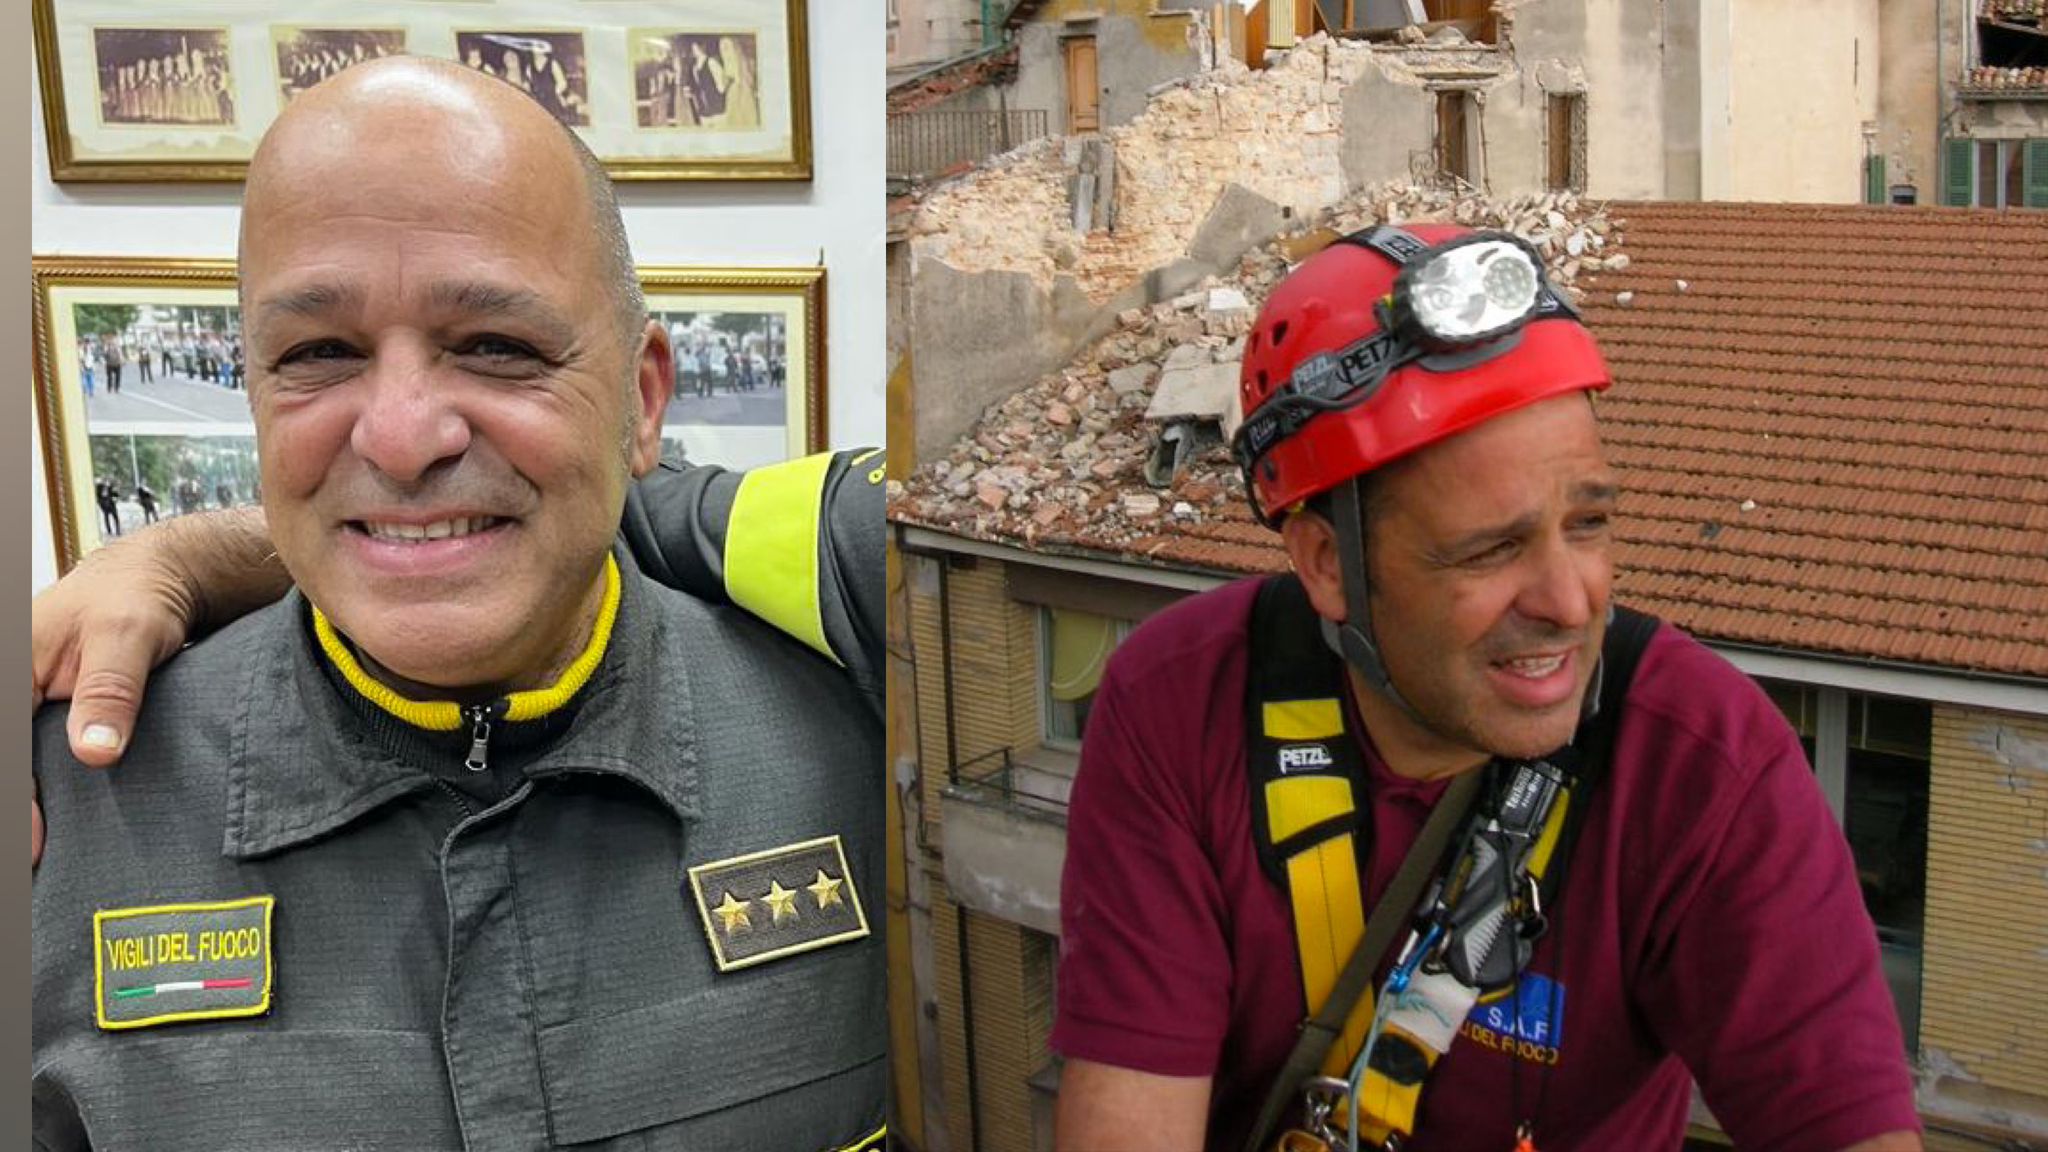 Antonio Angotzi lascia i Vigili del fuoco dopo 40 anni: 